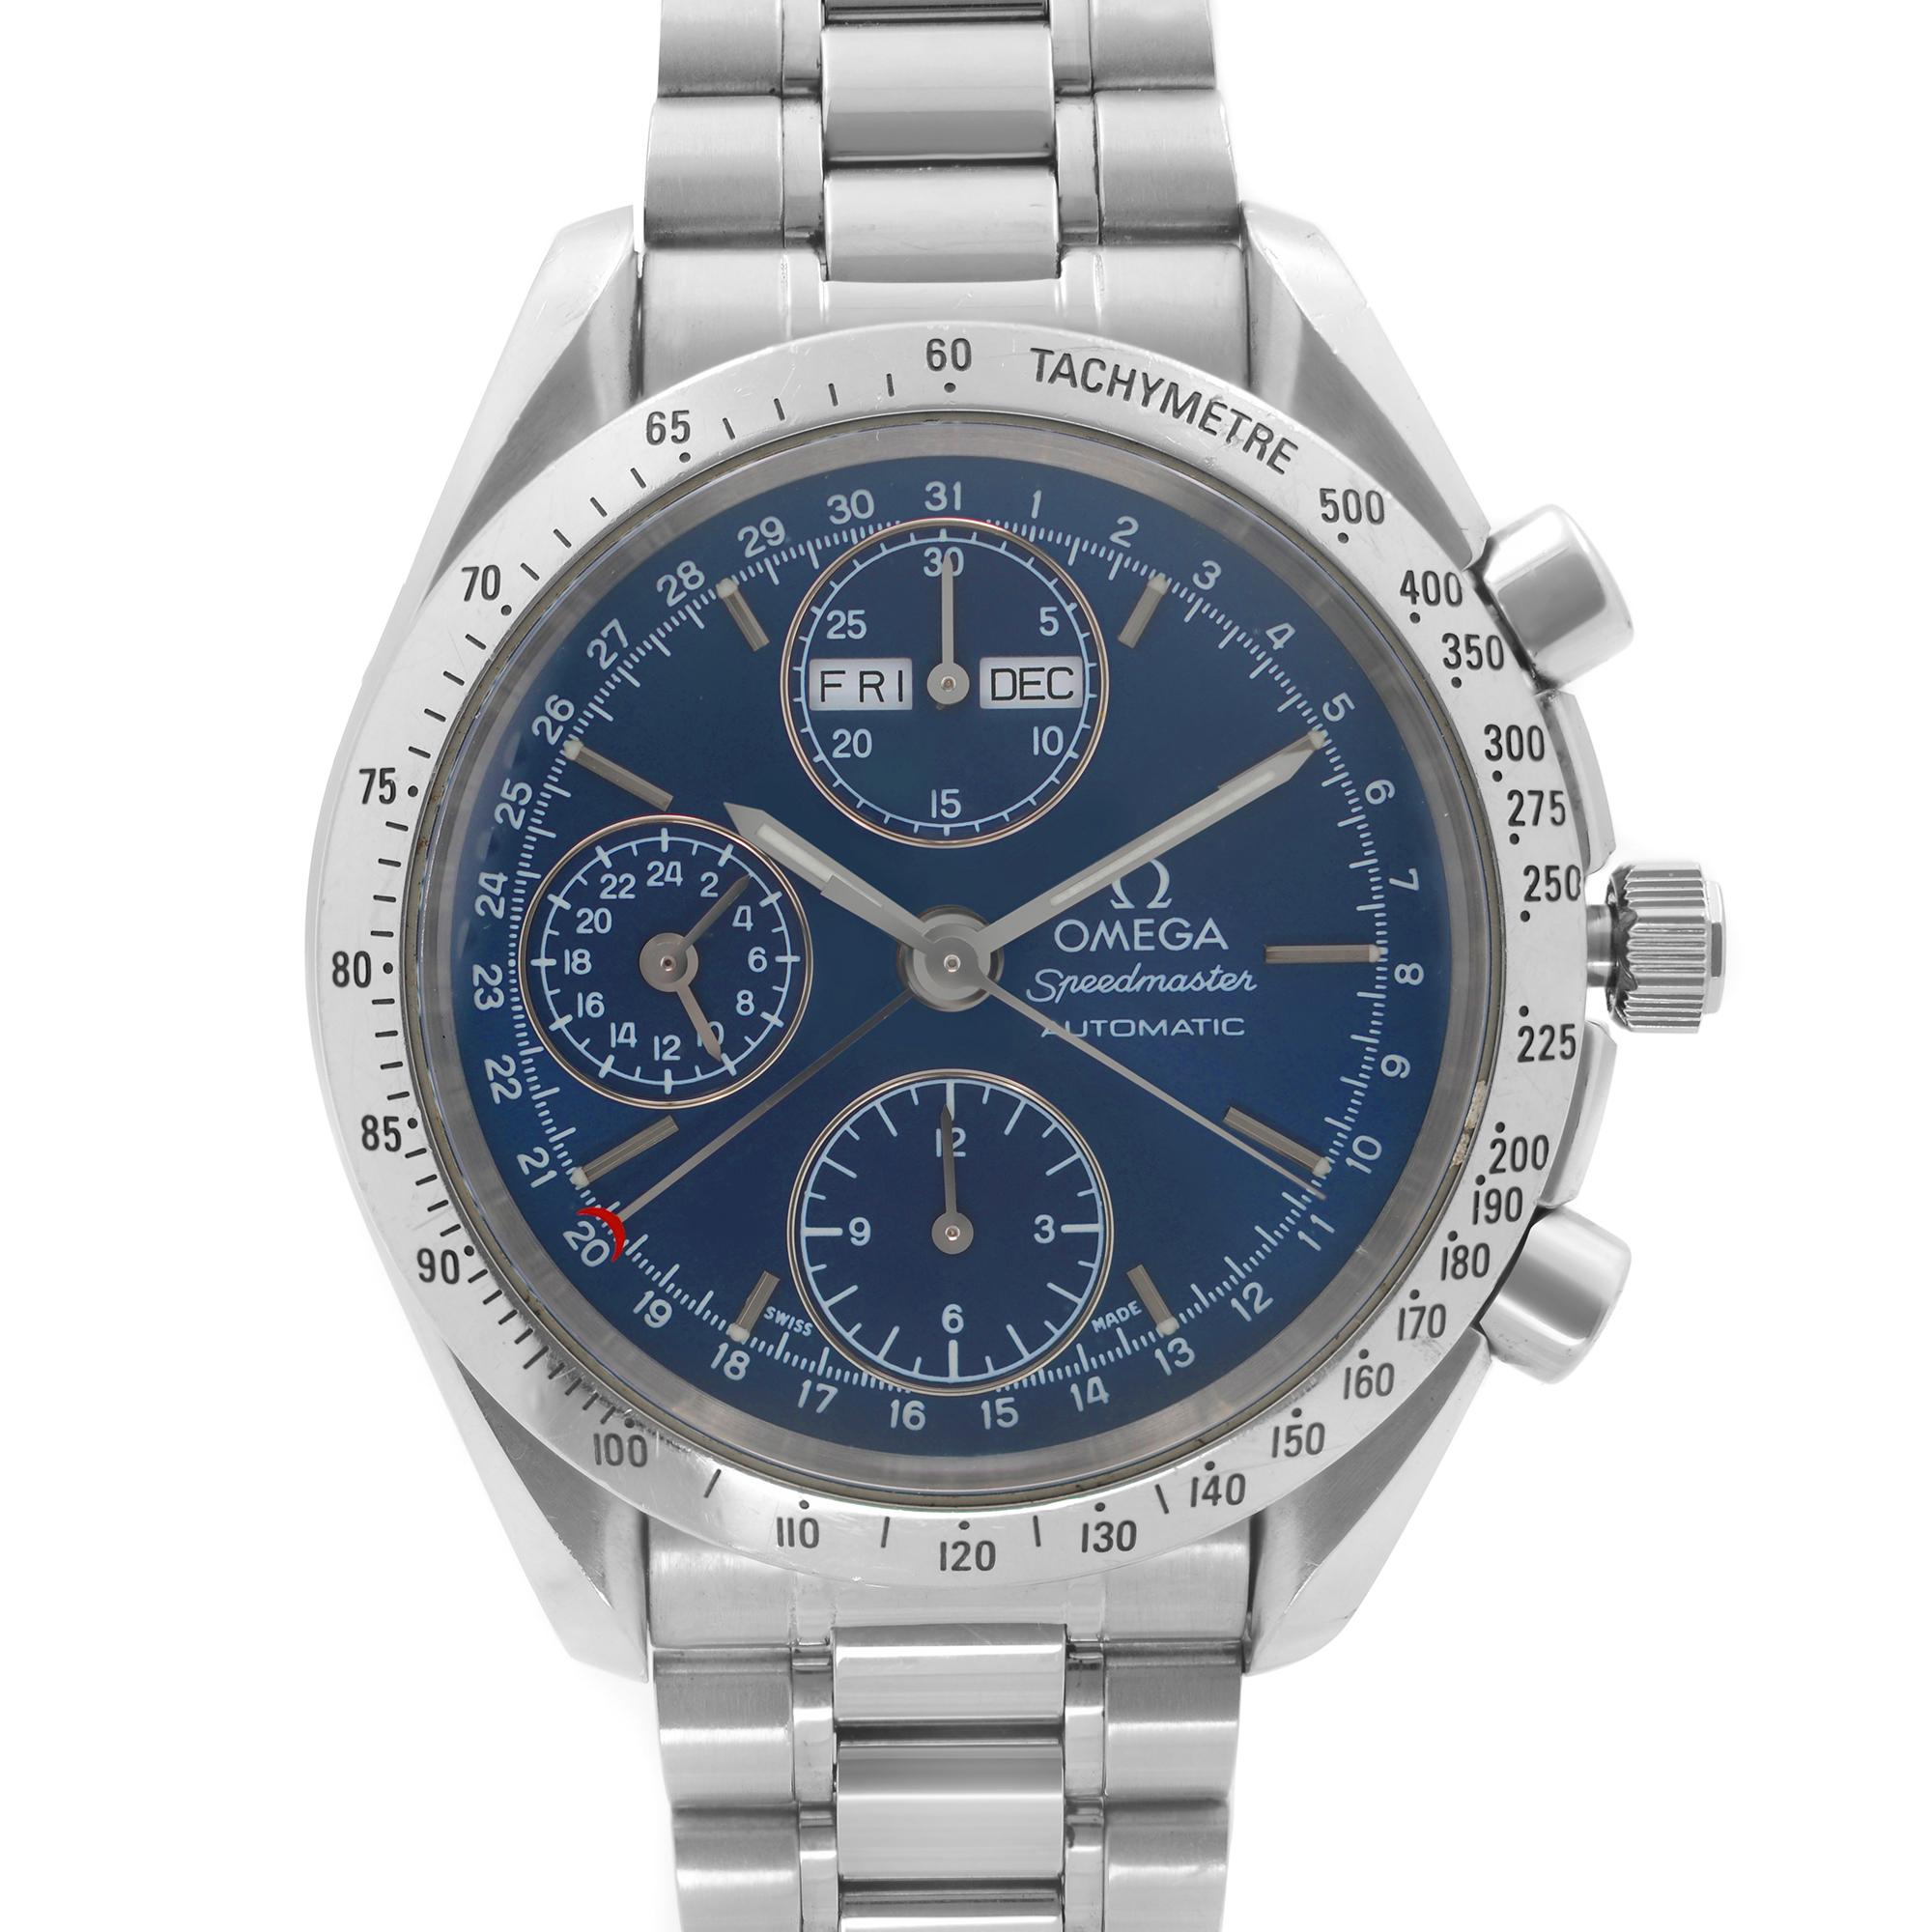 Pre Owned Omega Speedmaster Steel Chronograph Blue Dial Automatic Mens Watch 3521.80. Cette pièce d'horlogerie présente les caractéristiques suivantes : Boîtier et bracelet en acier inoxydable, lunette fixe en acier inoxydable avec tachymètre,